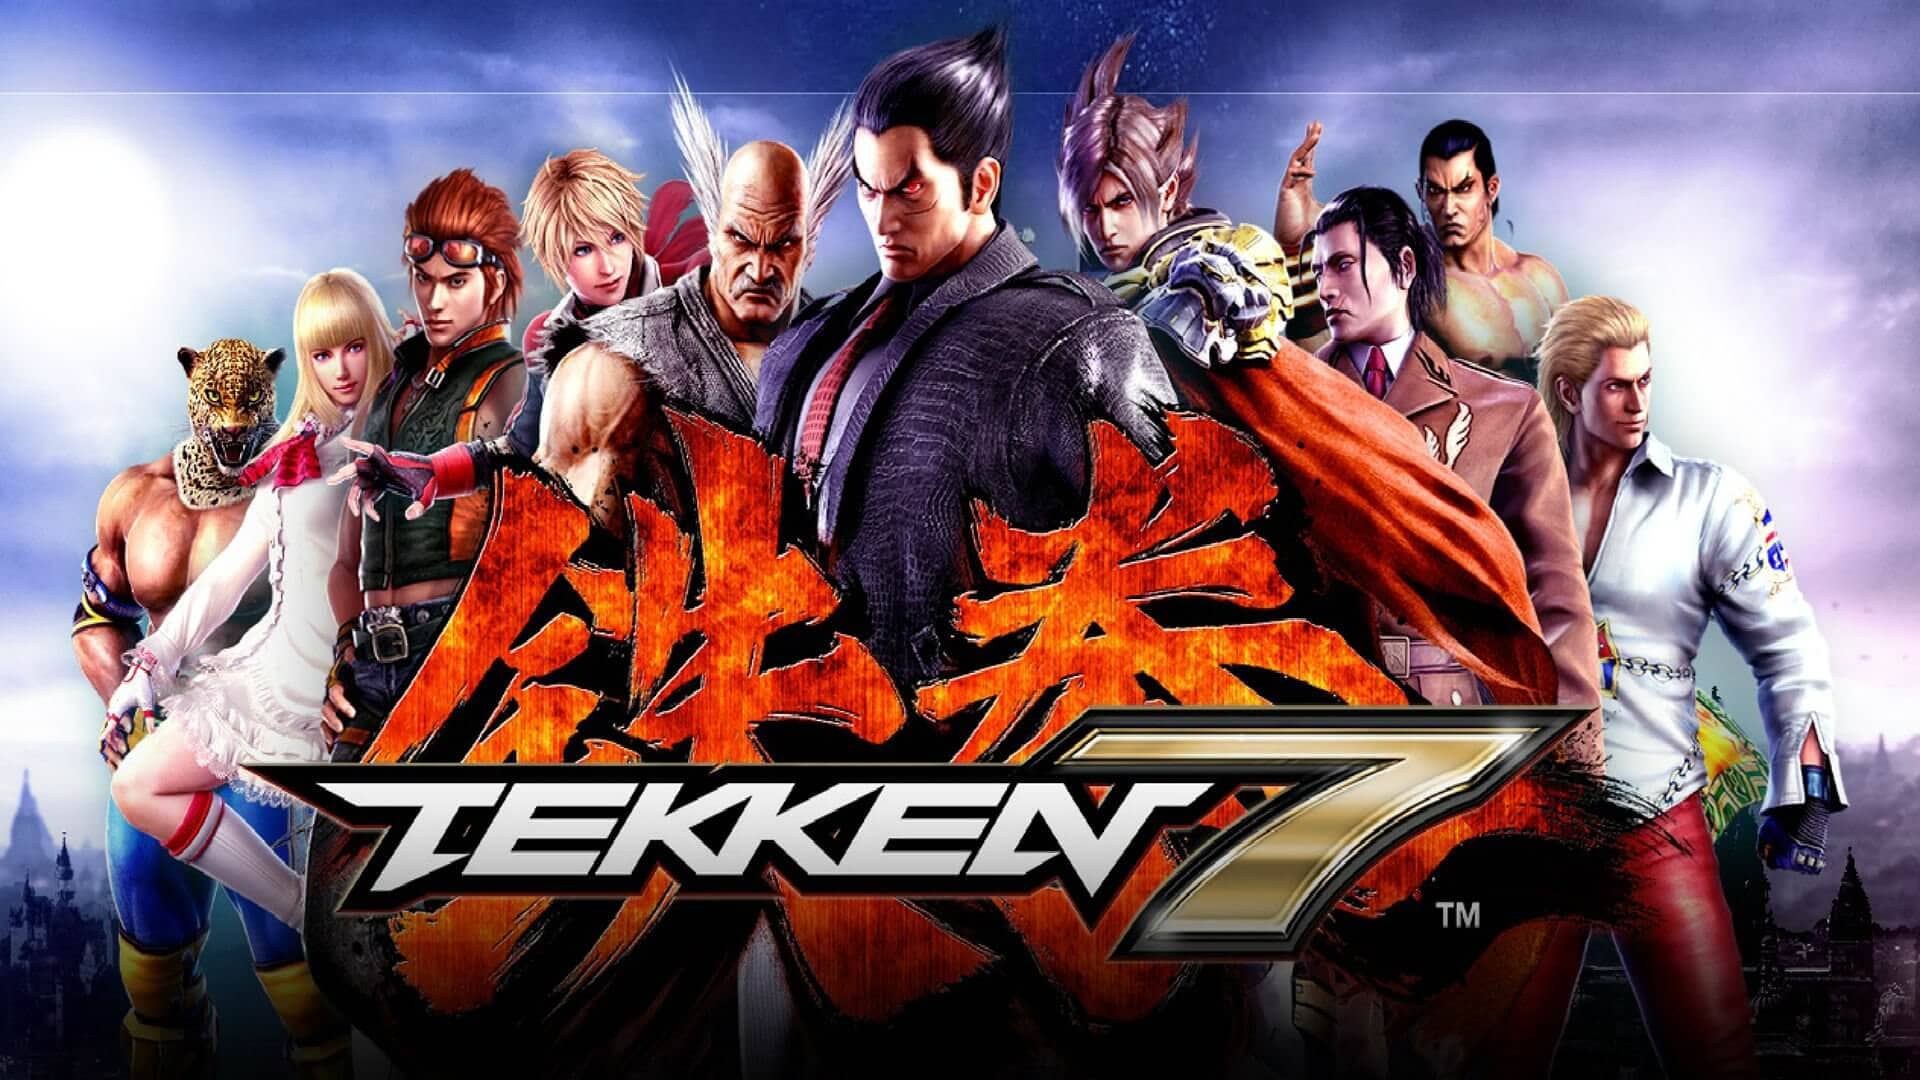 Le nombre de copies vendues de Tekken 7 a dépassé les 10 millions